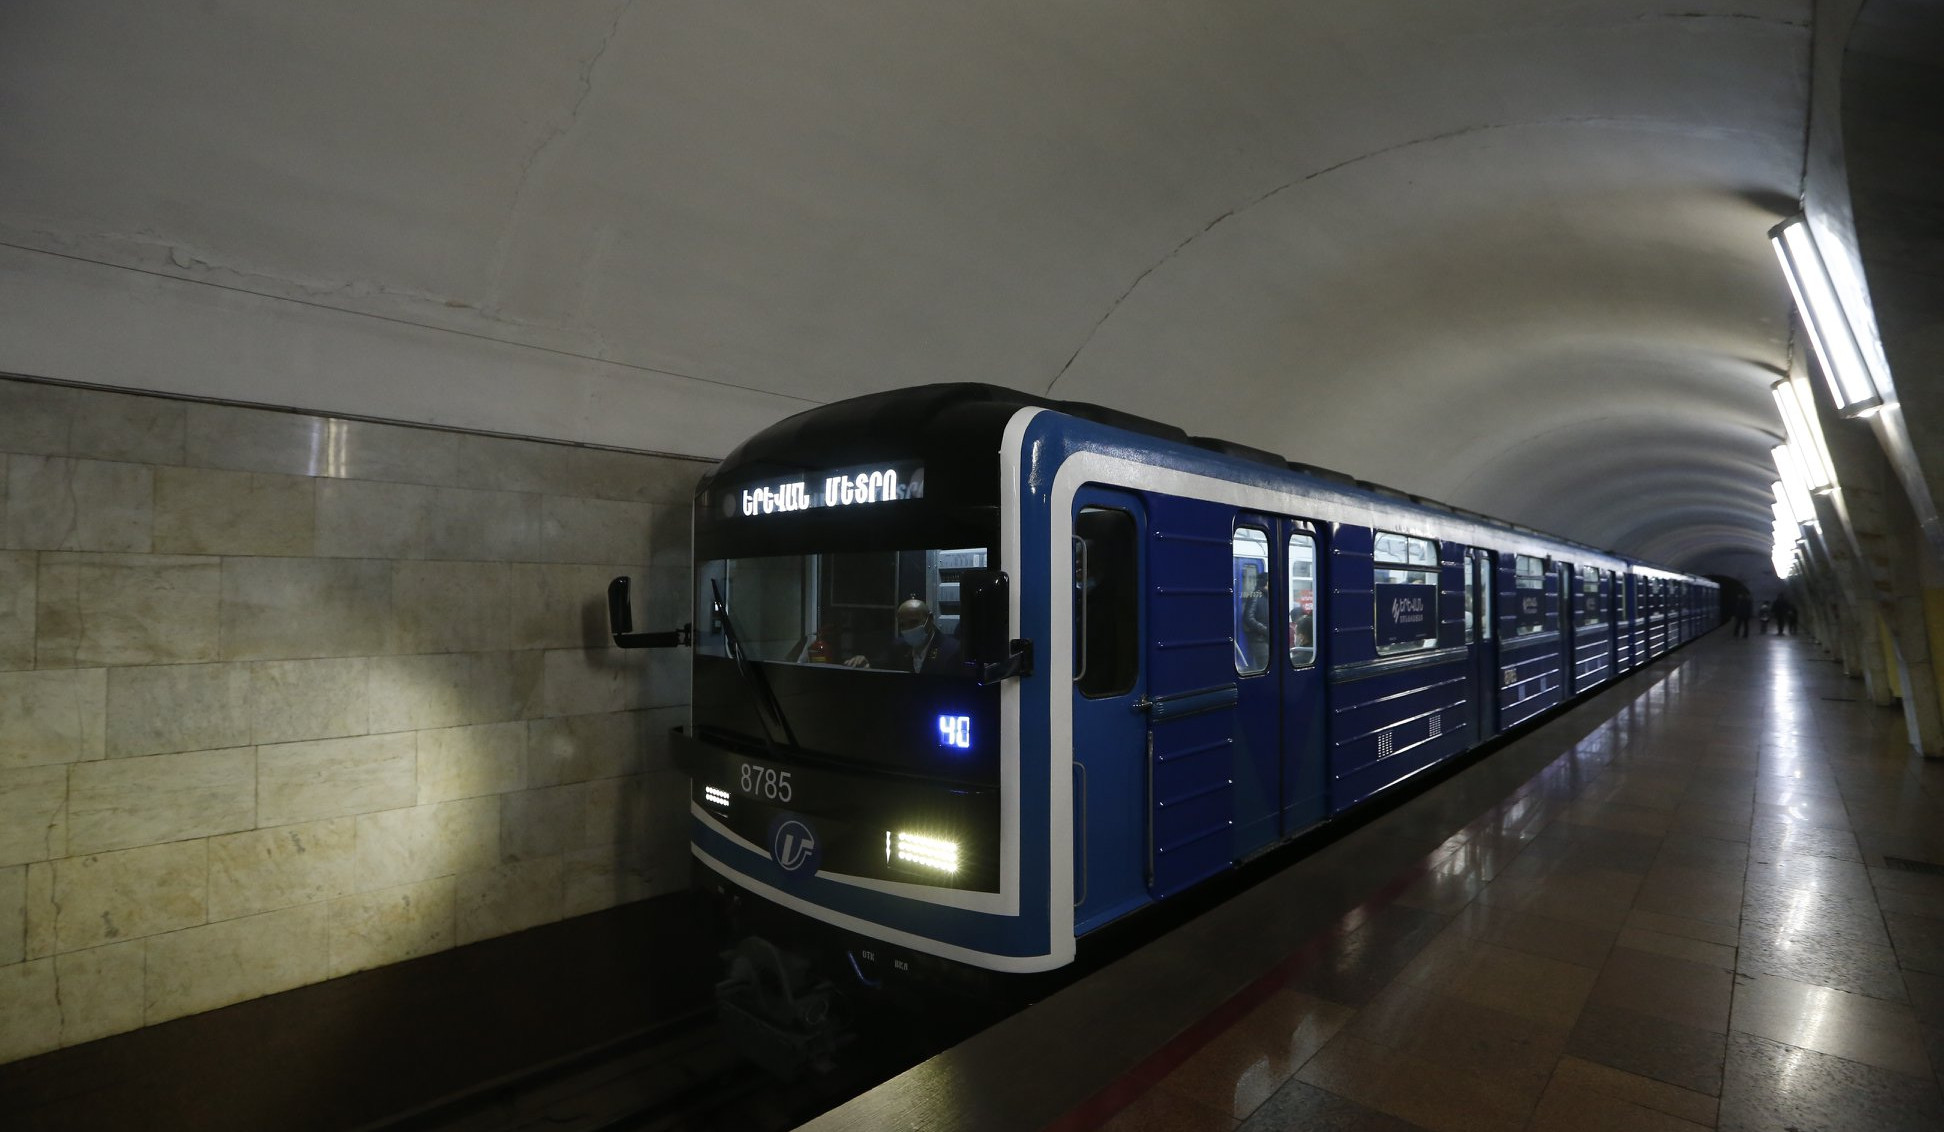 Կրկին ահազանգ է ստացվել, որ Երևանի մետրոպոլիտենի կայարաններում պայթուցիկ սարքեր են տեղադրված